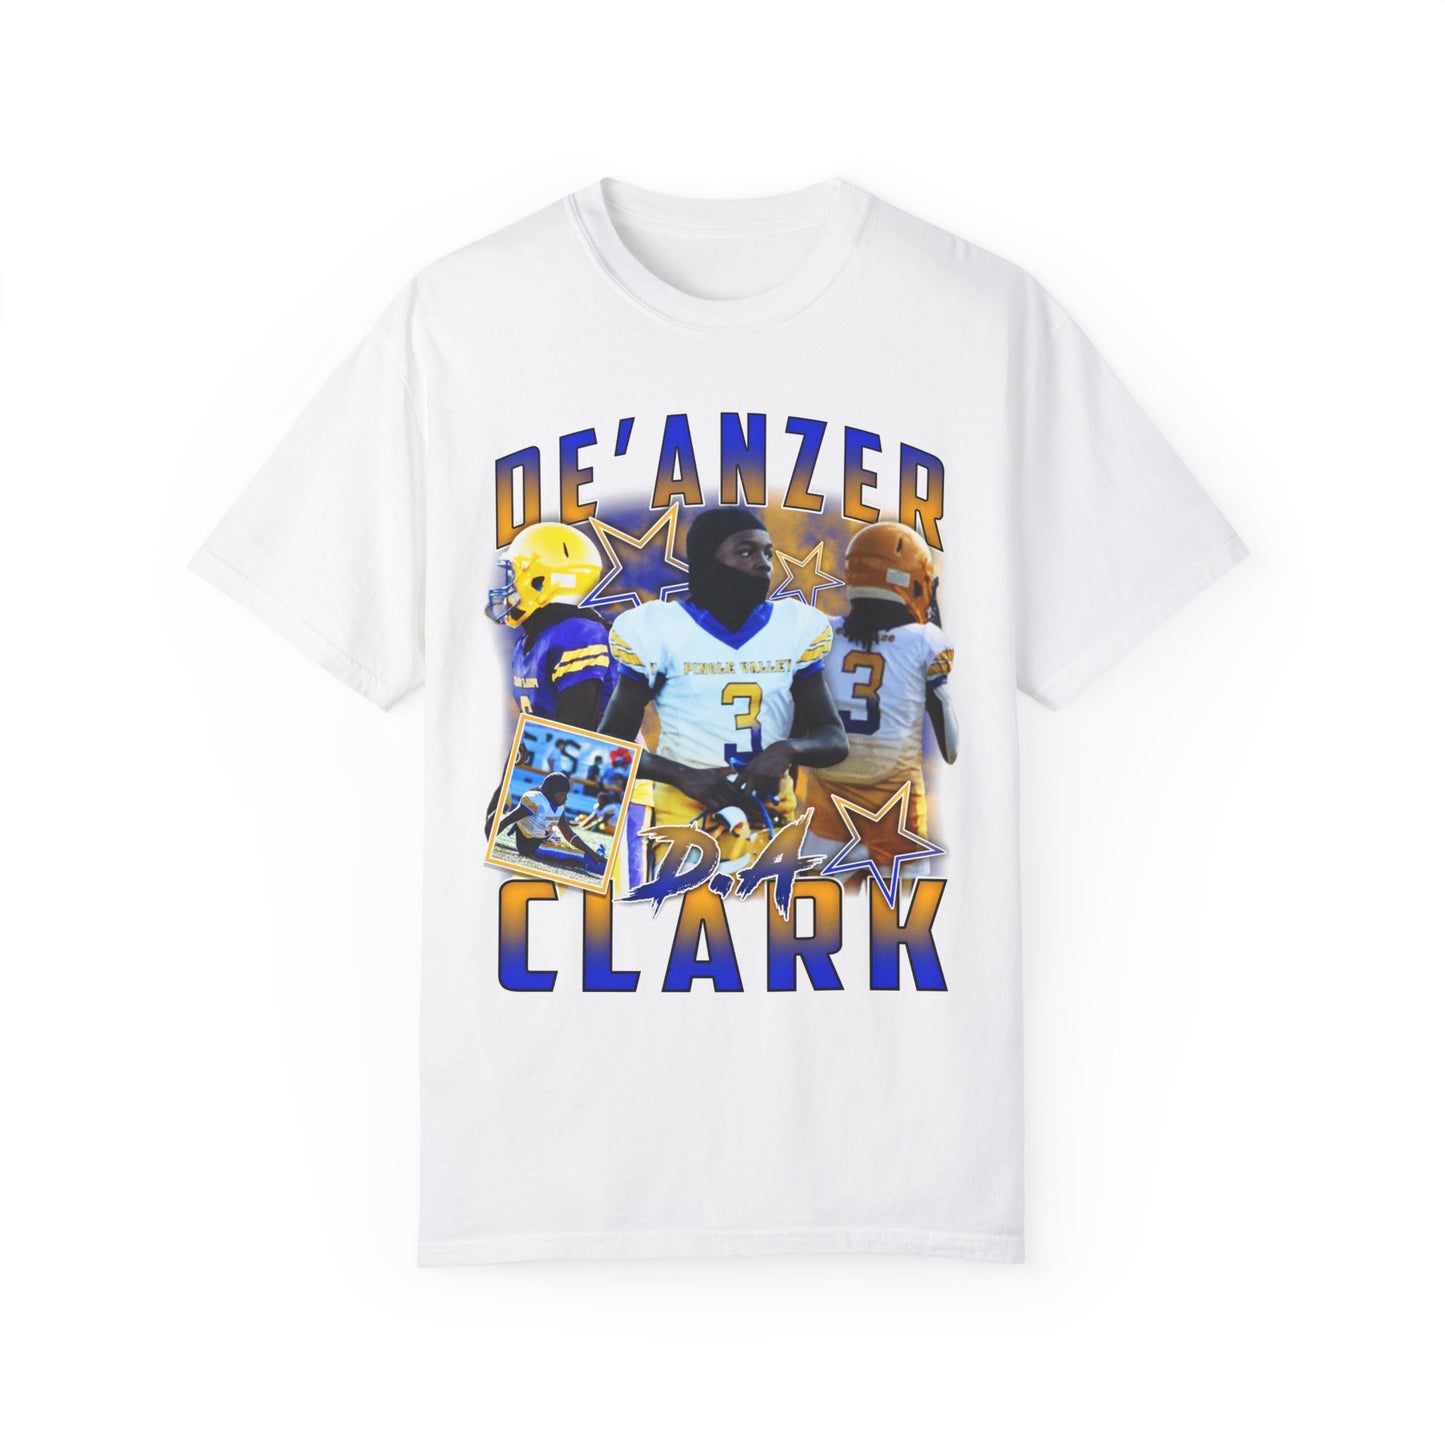 De'Anzer Clark Graphic T-shirt